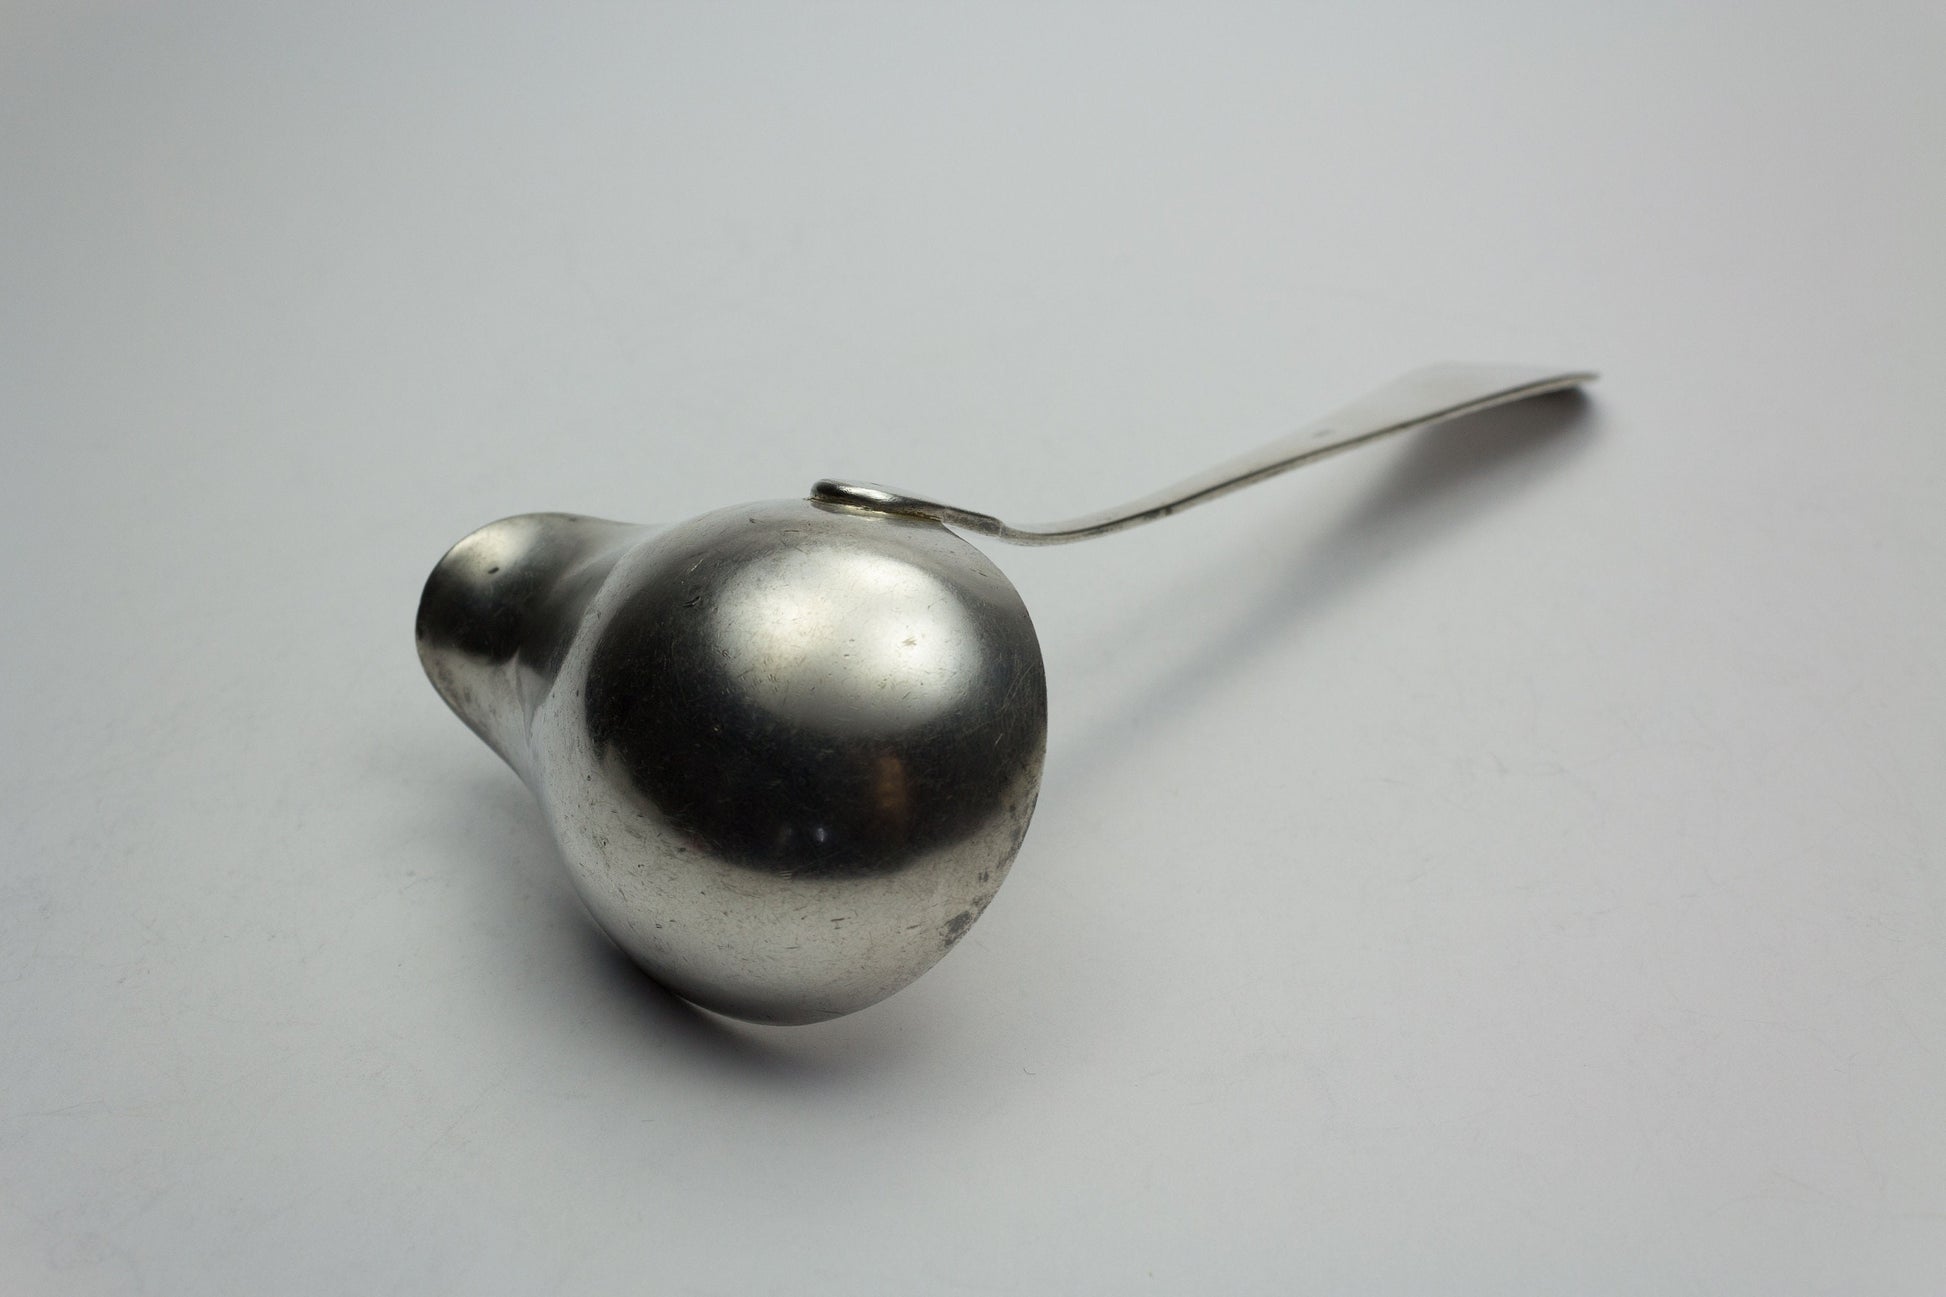 Sauce ladle, Art Nouveau, trowel, silvered, antique, cross band, cutlery, silver plated trowel, vintage ladle, ladle, art deco 